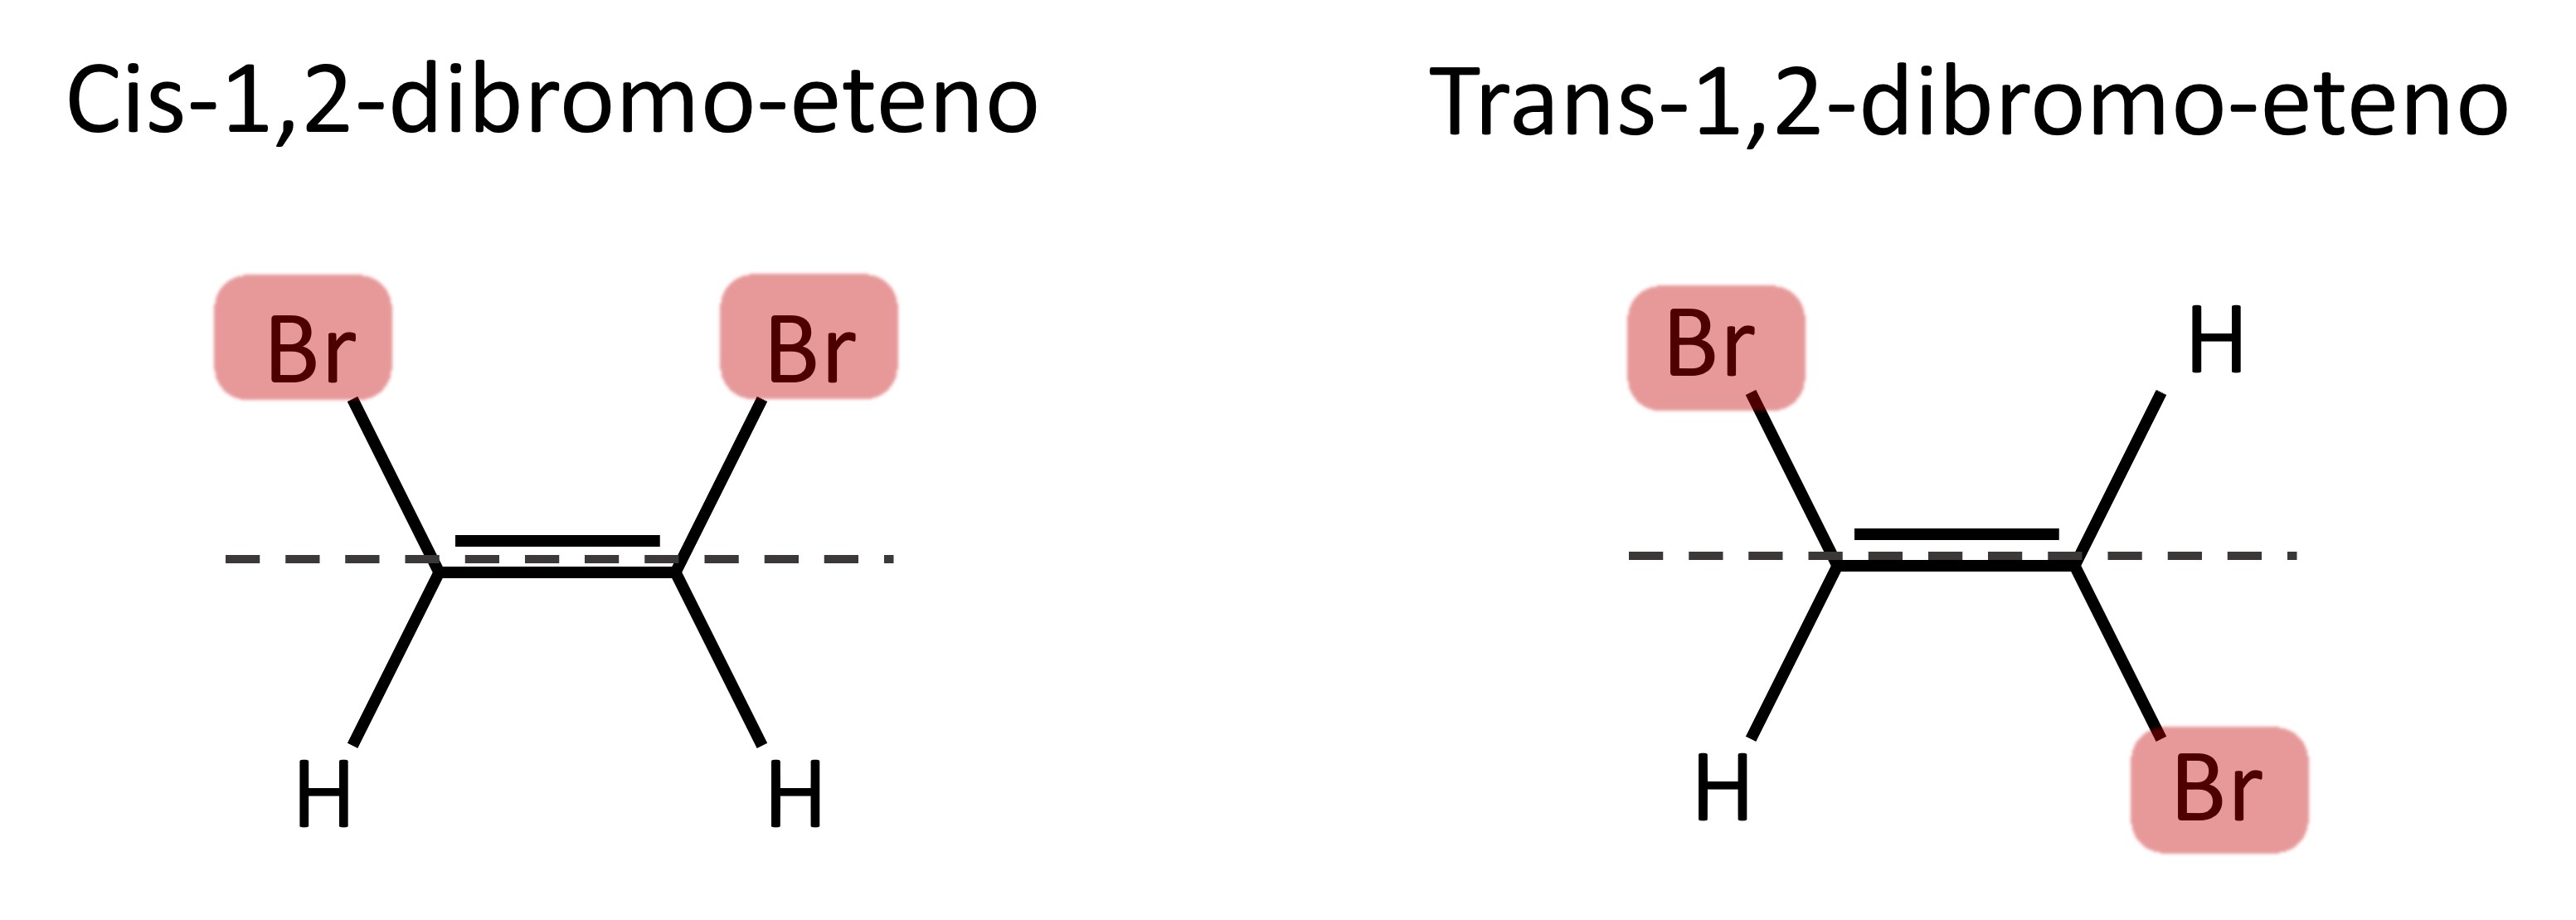 Estruturas e nomes dos isÃ´meros geomÃ©tricos cis-1,2-dibromo-eteno e trans-1,2-dibromo-eteno.